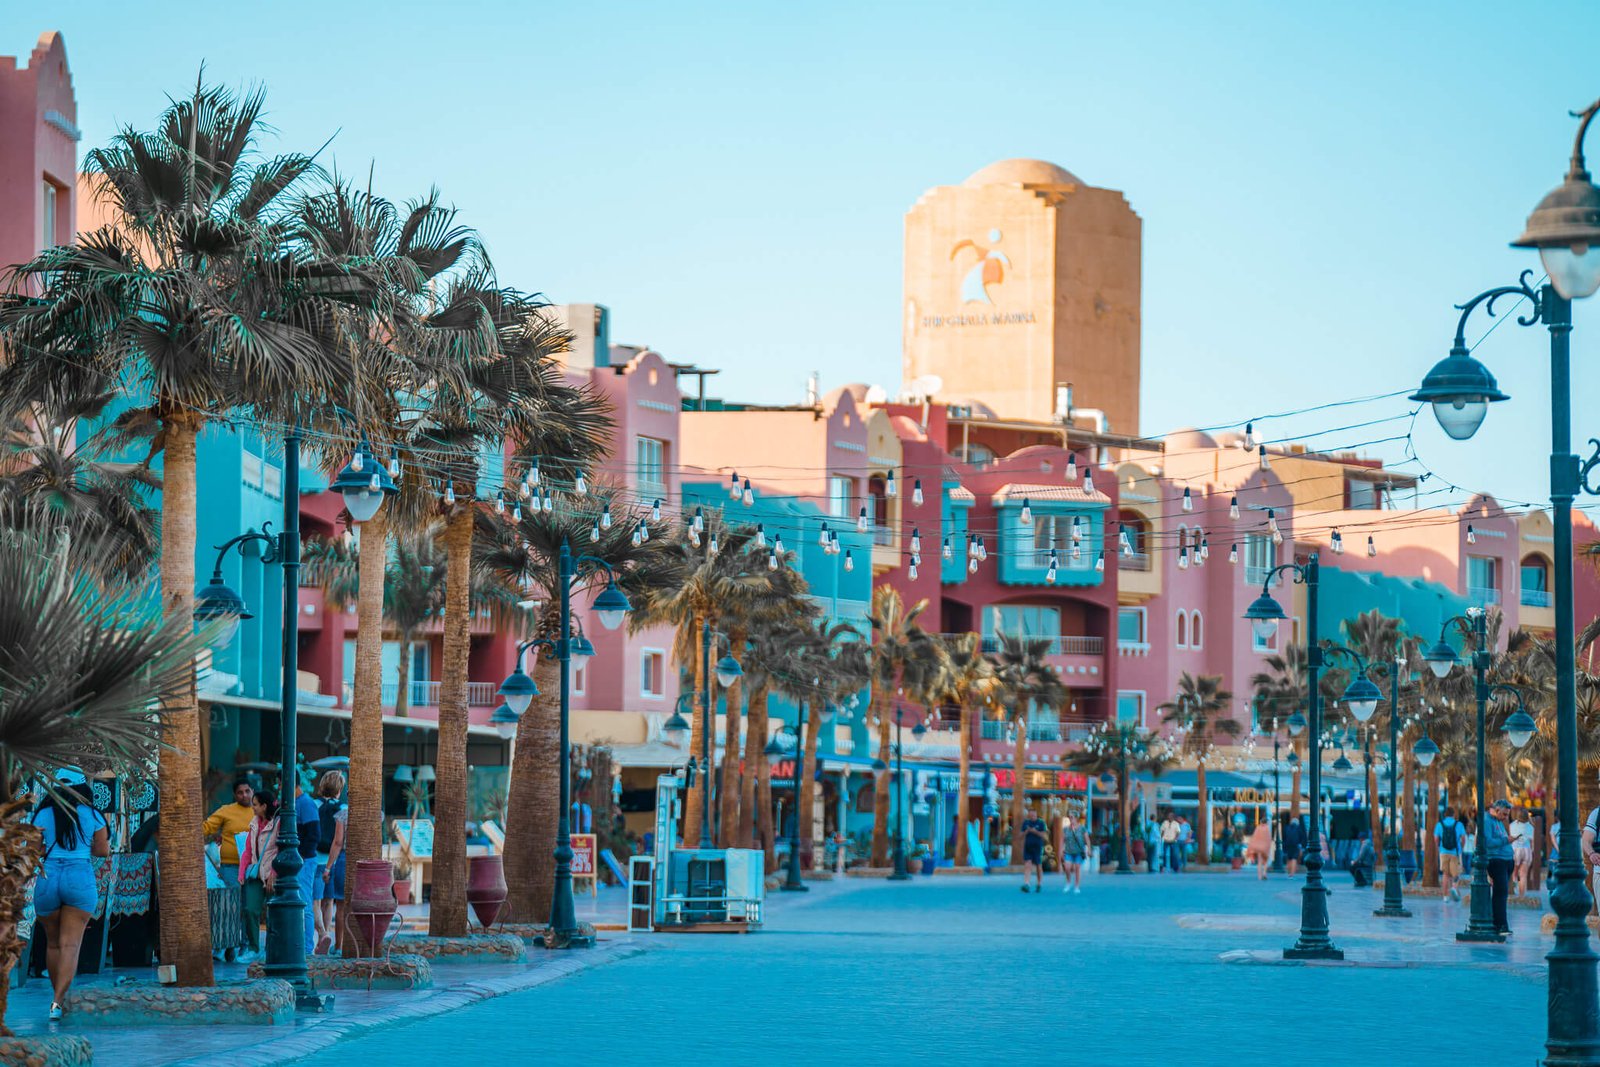 Hurghada Marina, where to go for the best beaches in Hurghada